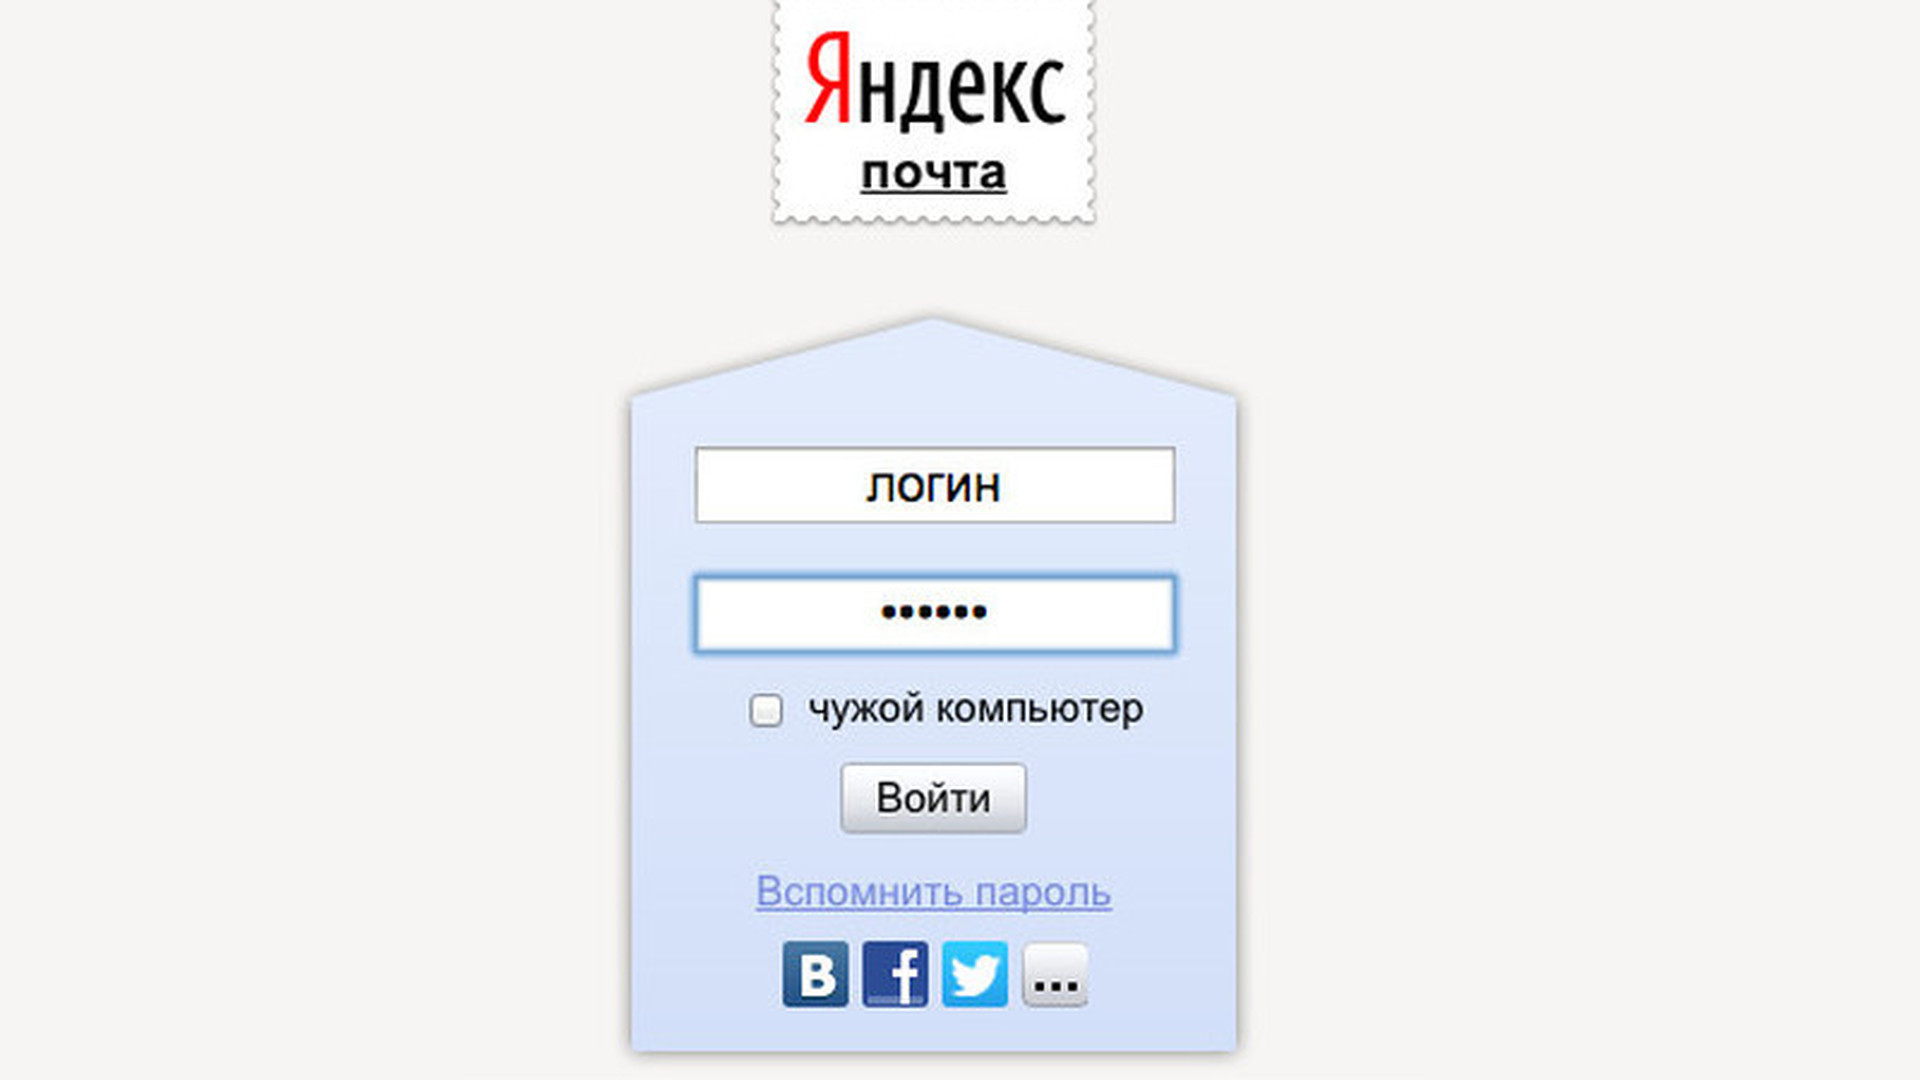 Яндекс.почта Яндекс.почта